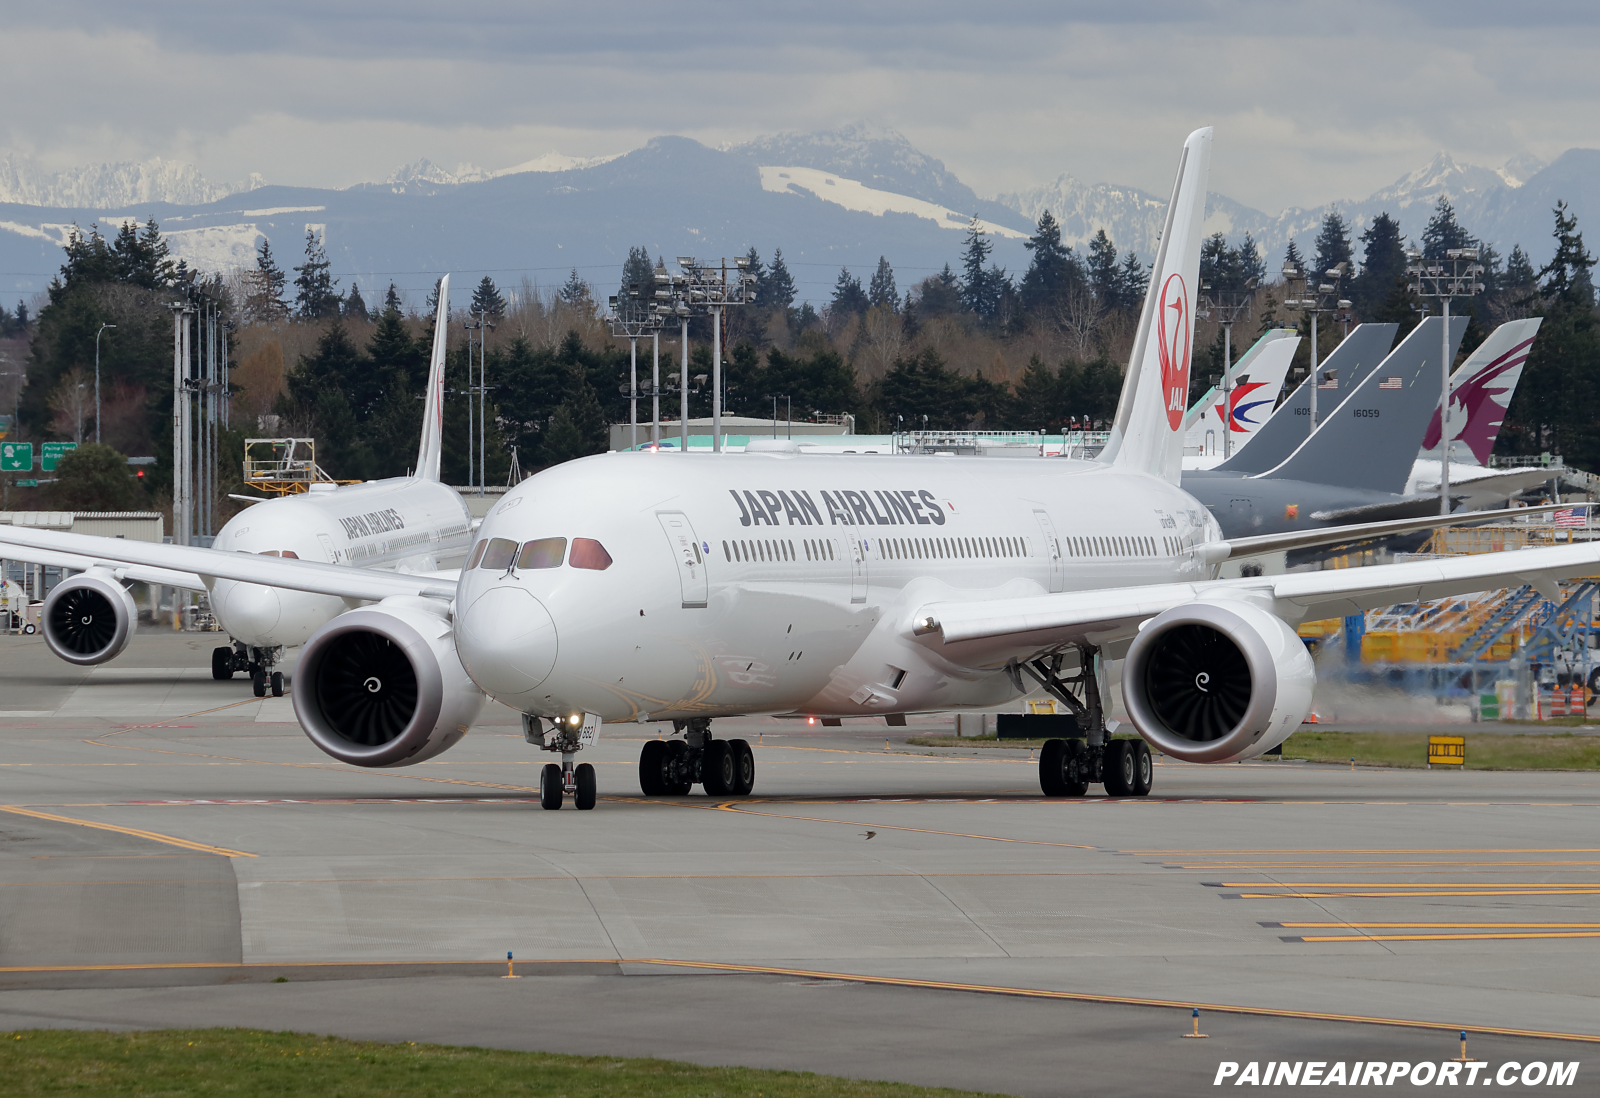 Japan Airlines 787-9 JA882J at KPAE Paine Field